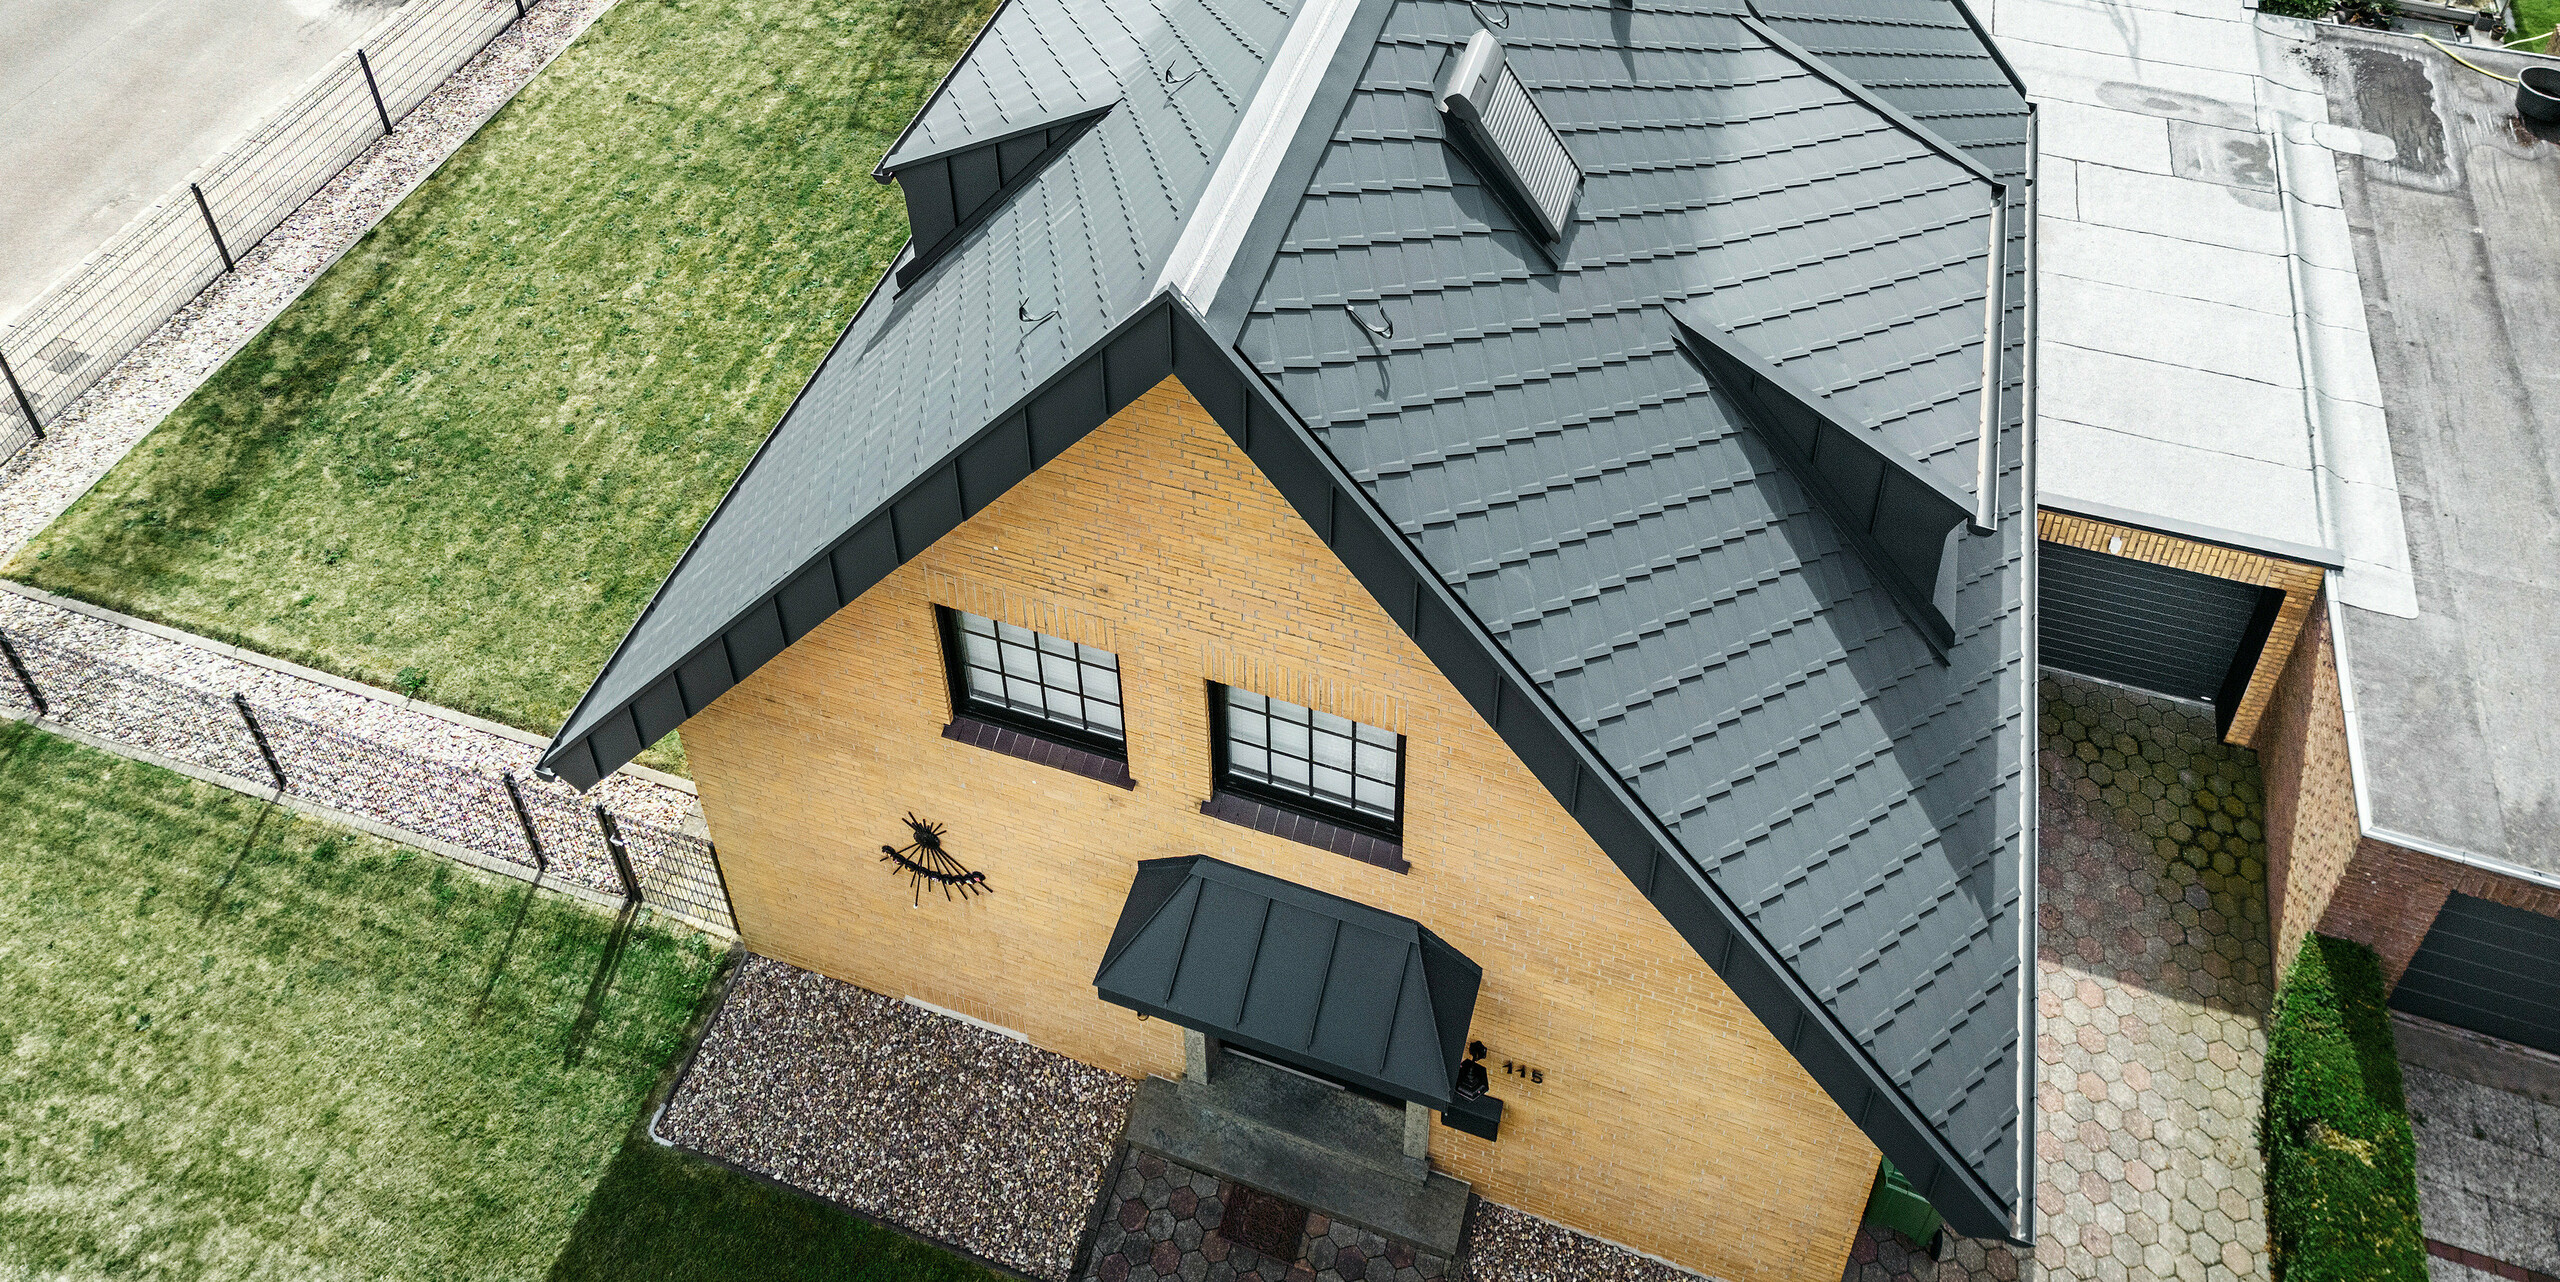 Pogled iz ptičje perspektive na enodružinsko hišo s PREFA streho antracitne barve s strešnimi rombi 29×29 in komplementarnim sistemom odvodnjavanja strehe. Hiša predstavlja fasado iz rumene opeke in dve mansardni okni, ki skupaj s streho ustvarjata skladen estetski kontrast. Celoten pogled kaže na skrbno razporeditev strešnih elementov in strukturirano eleganco zasnove strehe.